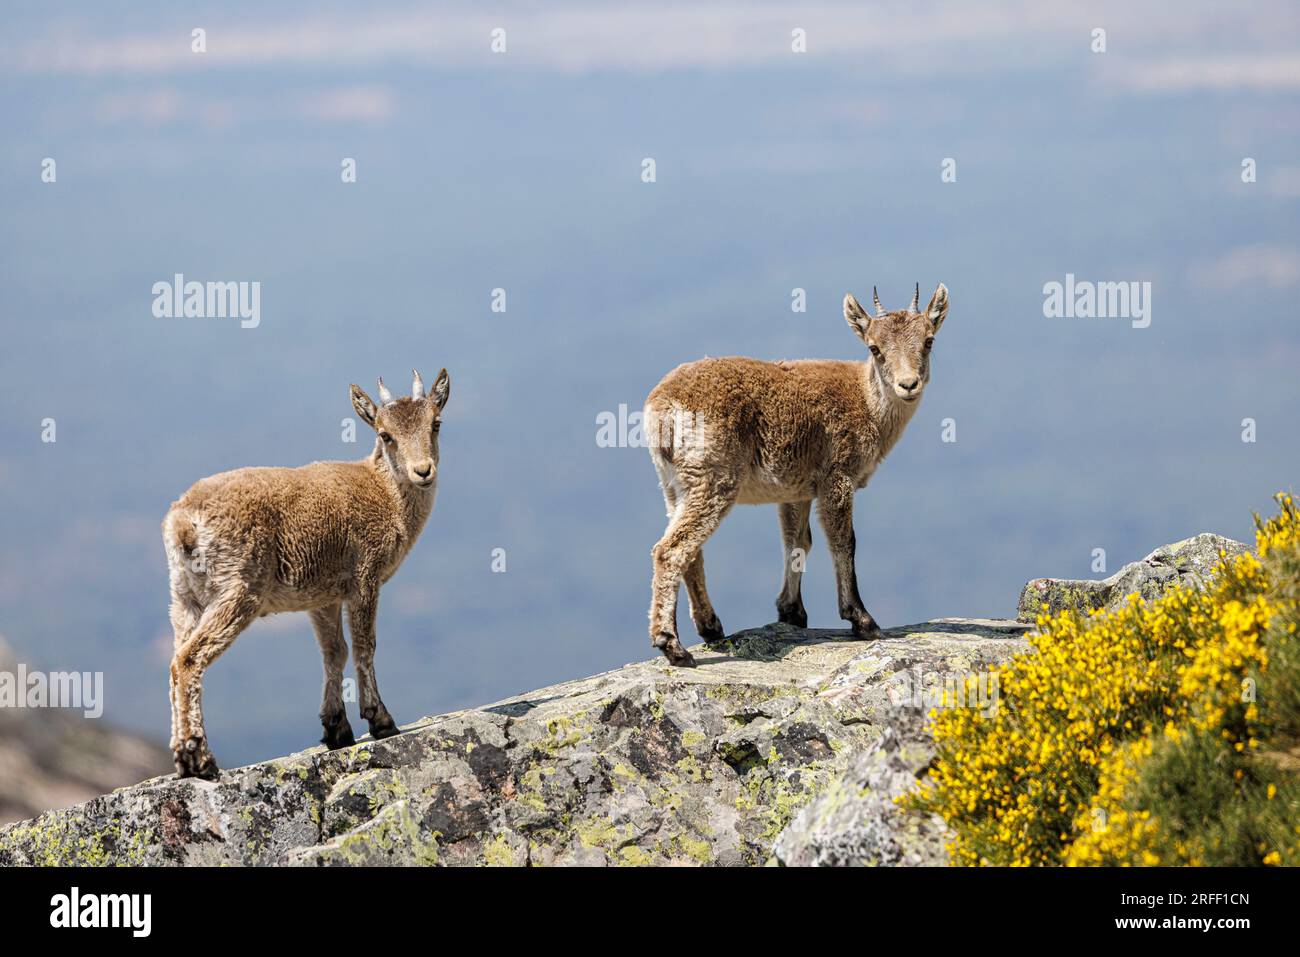 Spain, Castile and Leon, La Alberca, la Pena de Francia, Spanish or Iberian Ibex (Capra pyrenaica) Stock Photo